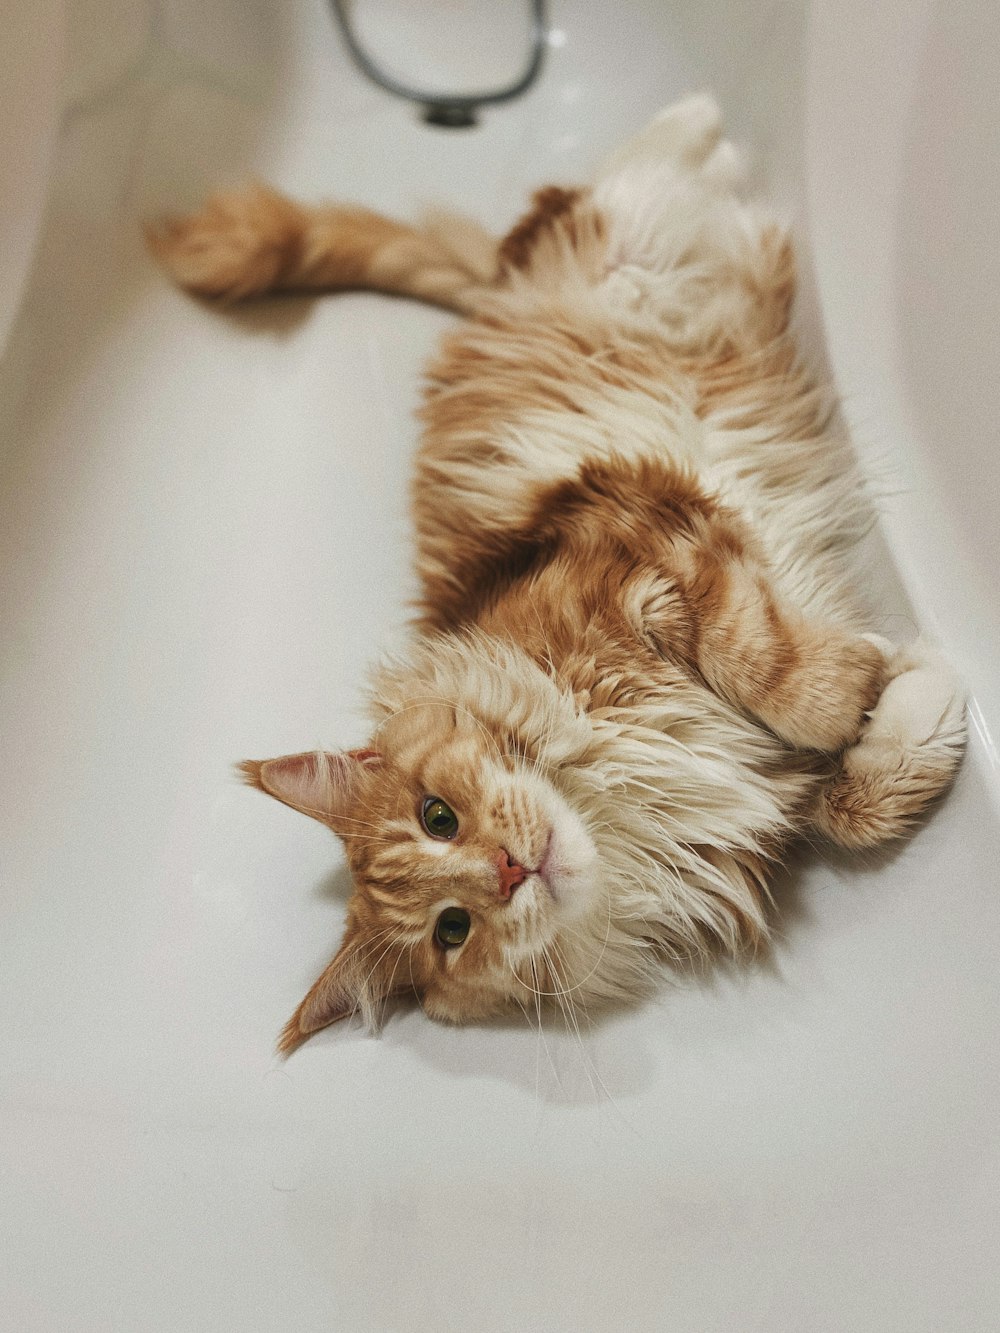 orange tabby cat lying on white ceramic bathtub